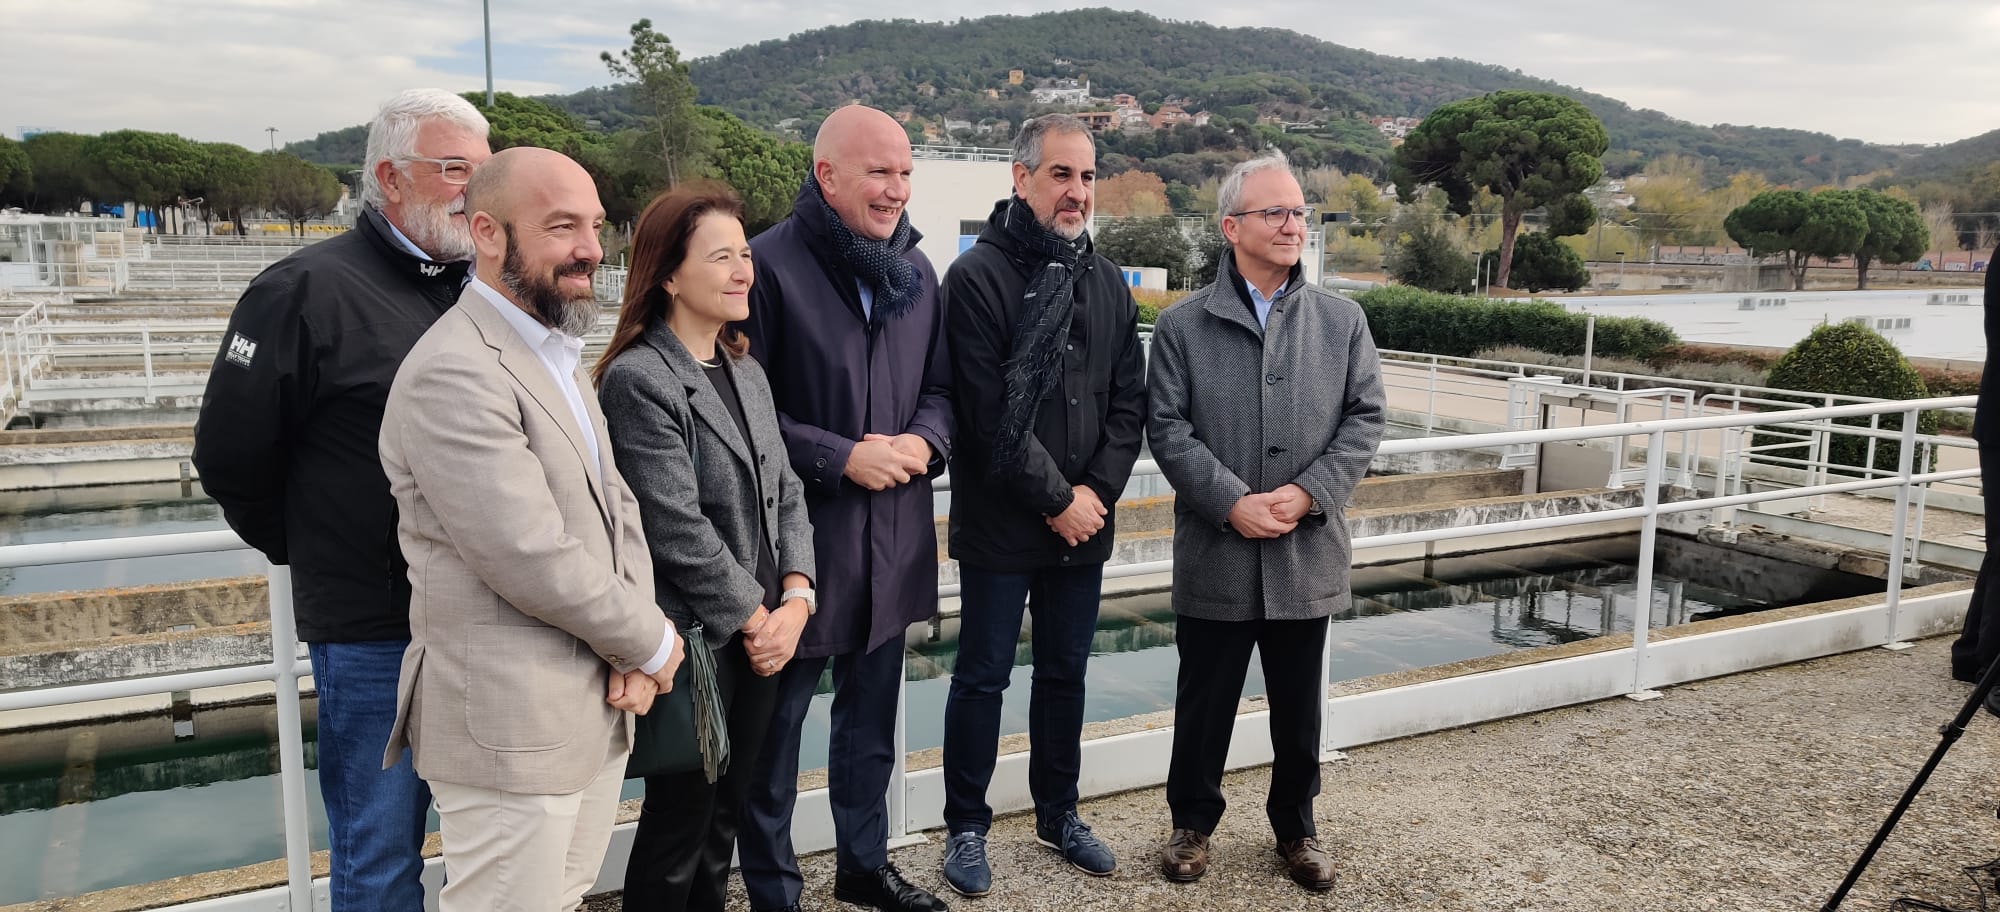 La Generalitat invertirà més de 123 milions d'euros per rehabilitar la planta potabilitzadora del Ter, situada al terme municipal de la Roca del Vallès